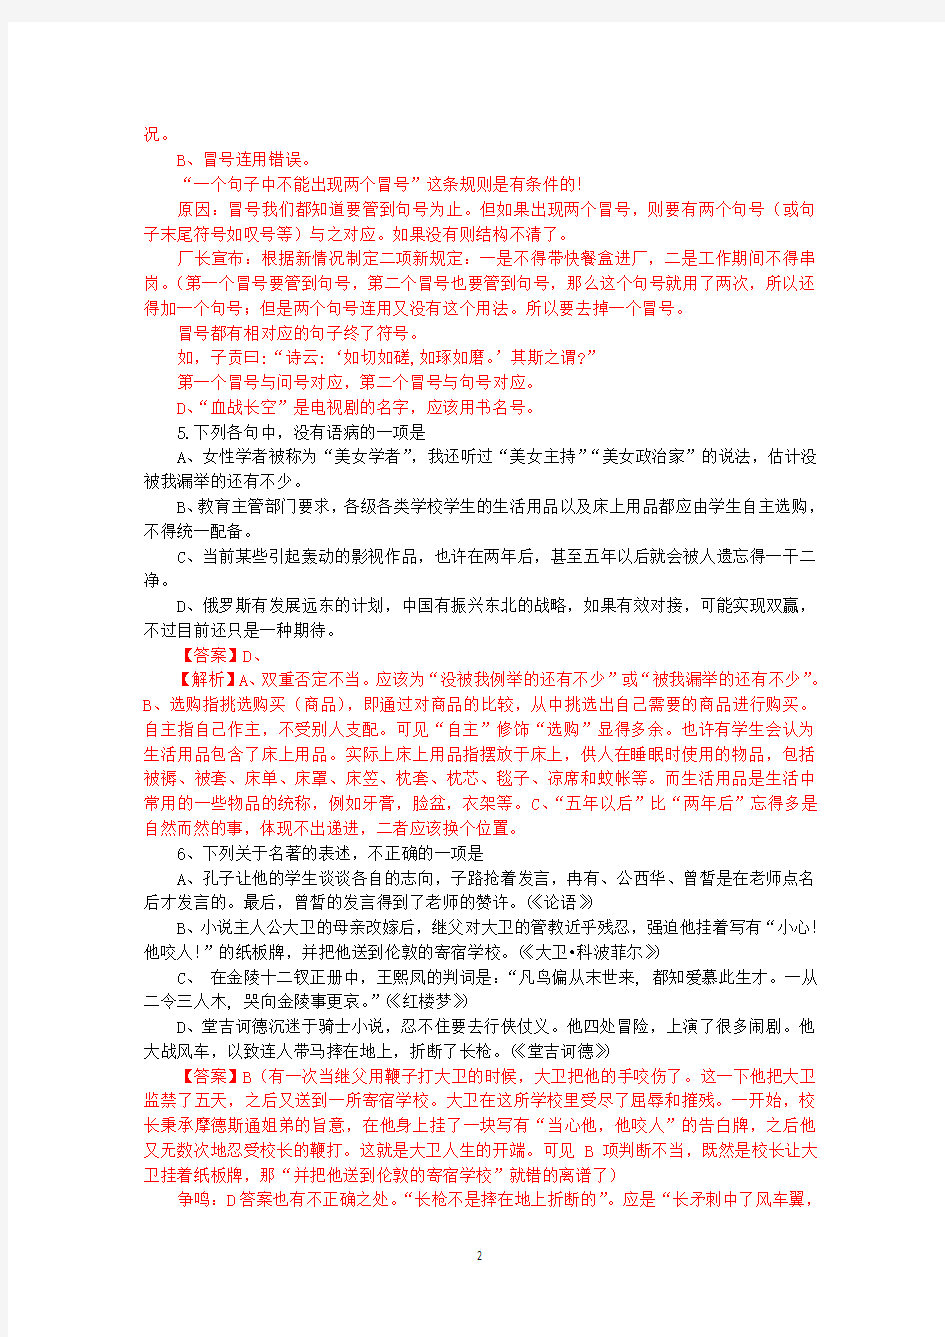 2013年高考真题——语文(江西卷) 解析版